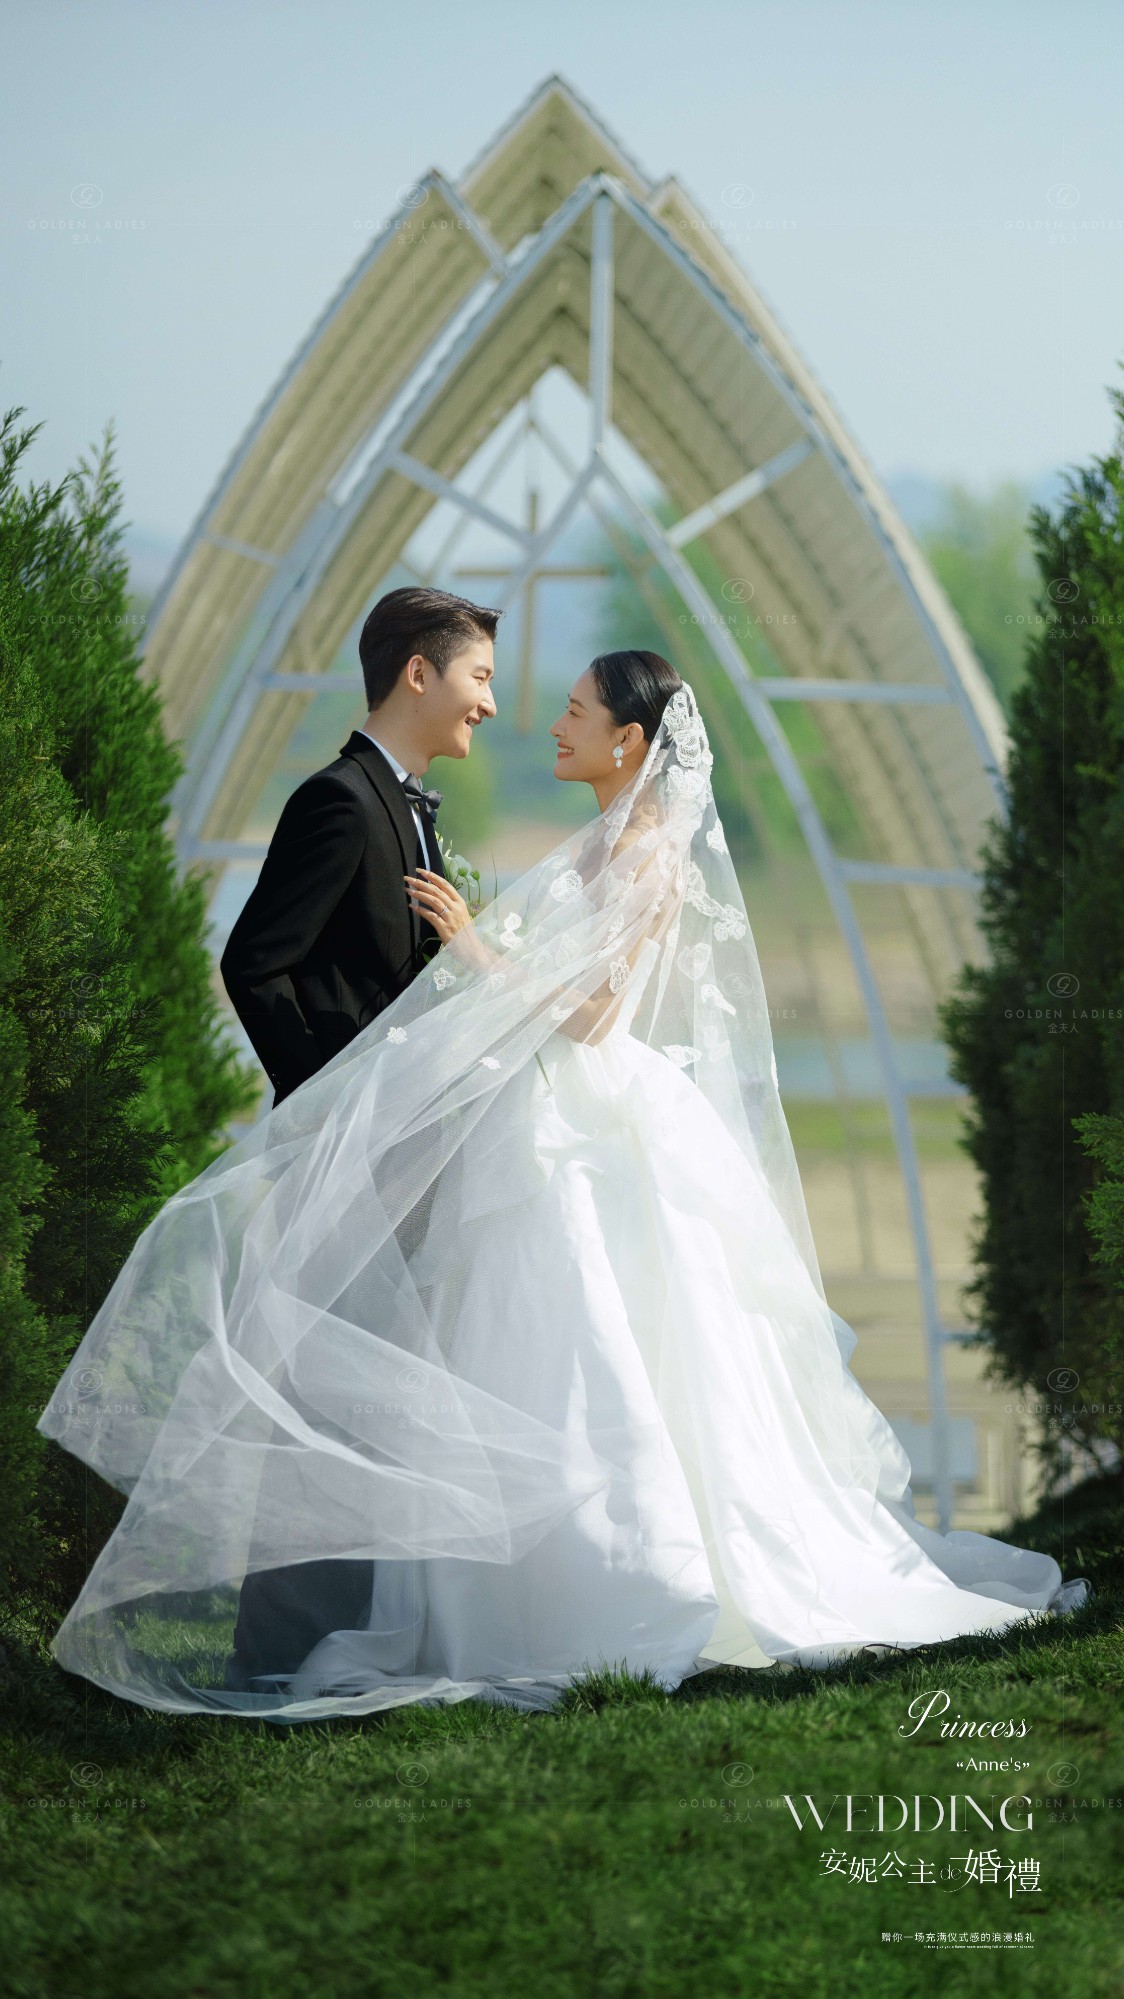 安妮公主的婚礼-贵州婚纱摄影_贵州婚纱照_贵州婚纱影楼_贵州金夫人婚纱摄影